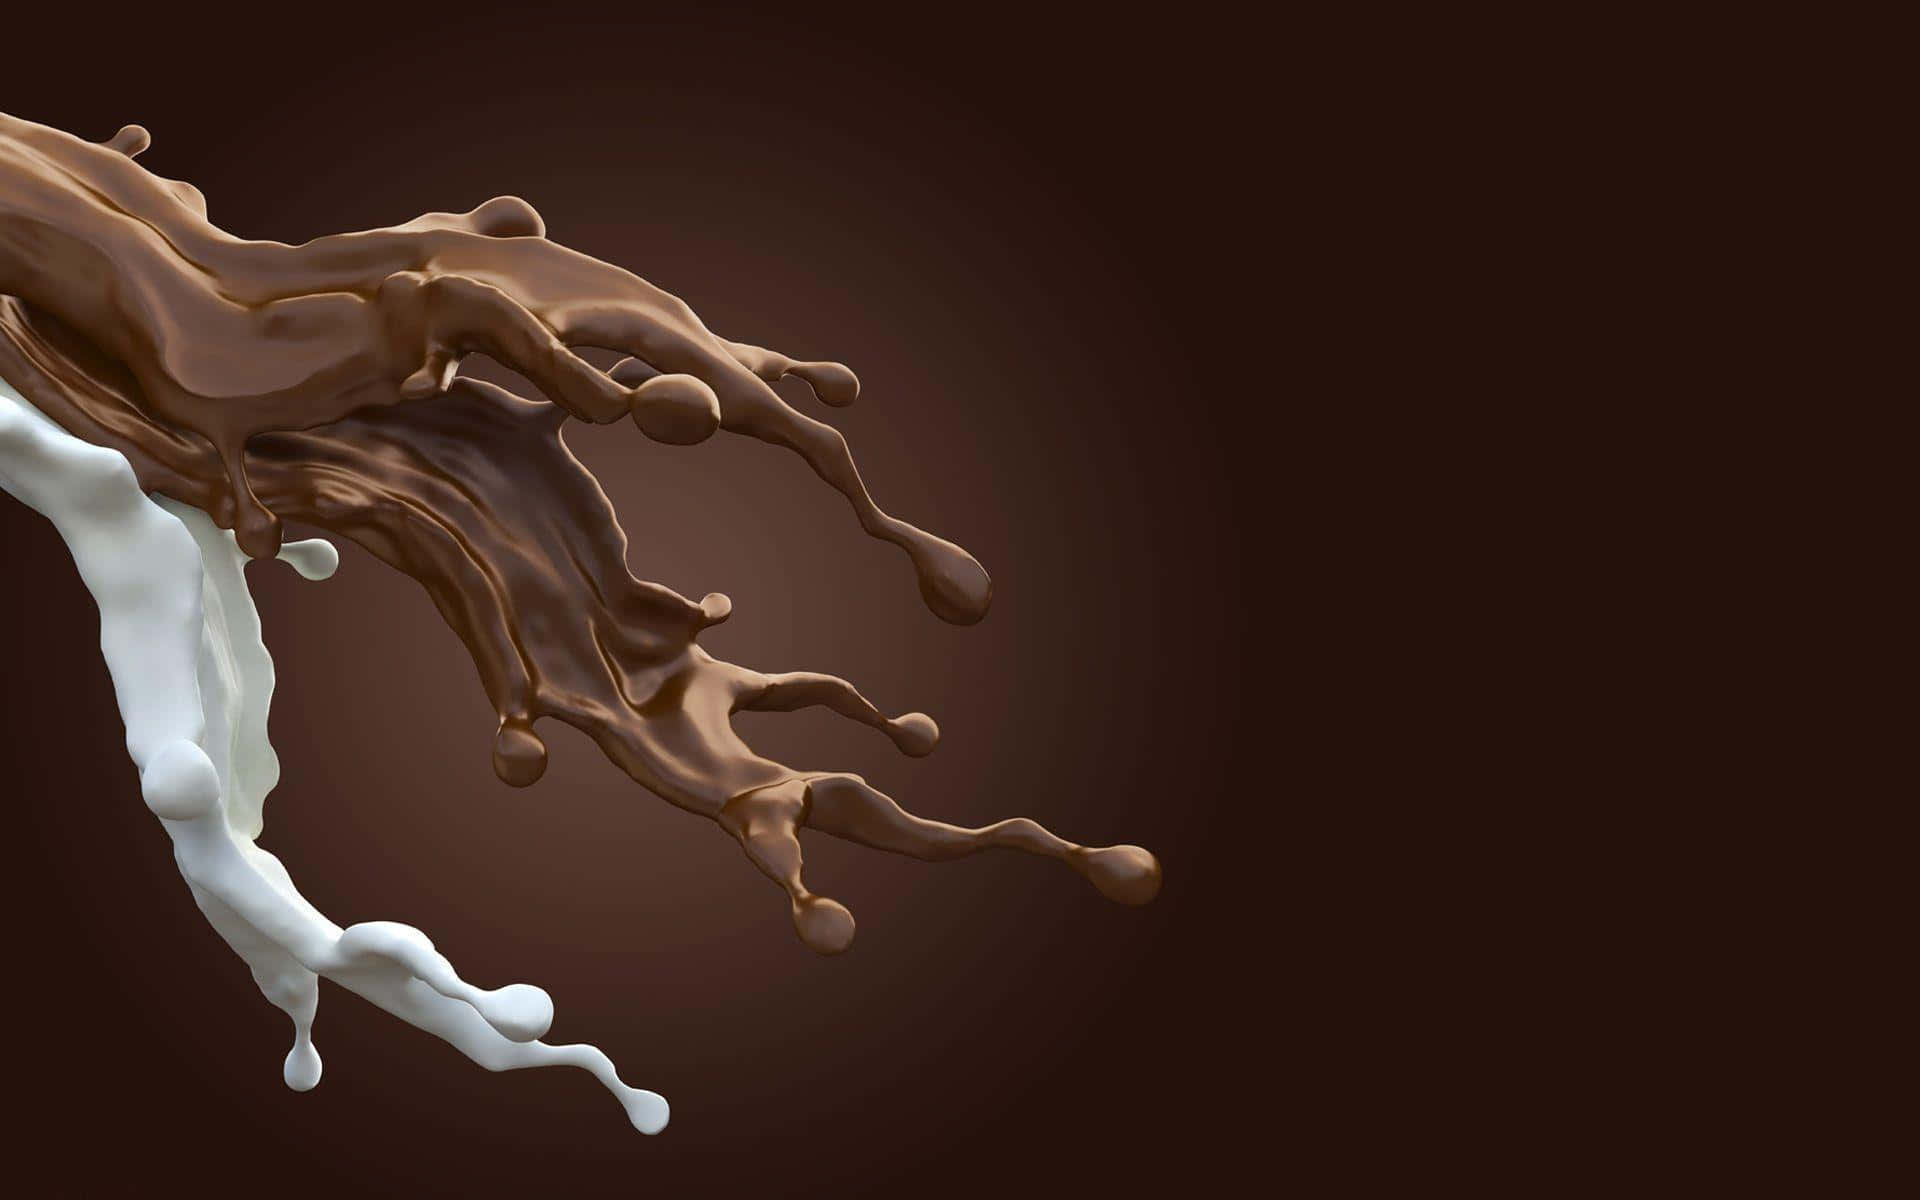 A Chocolate Splash On A Dark Background